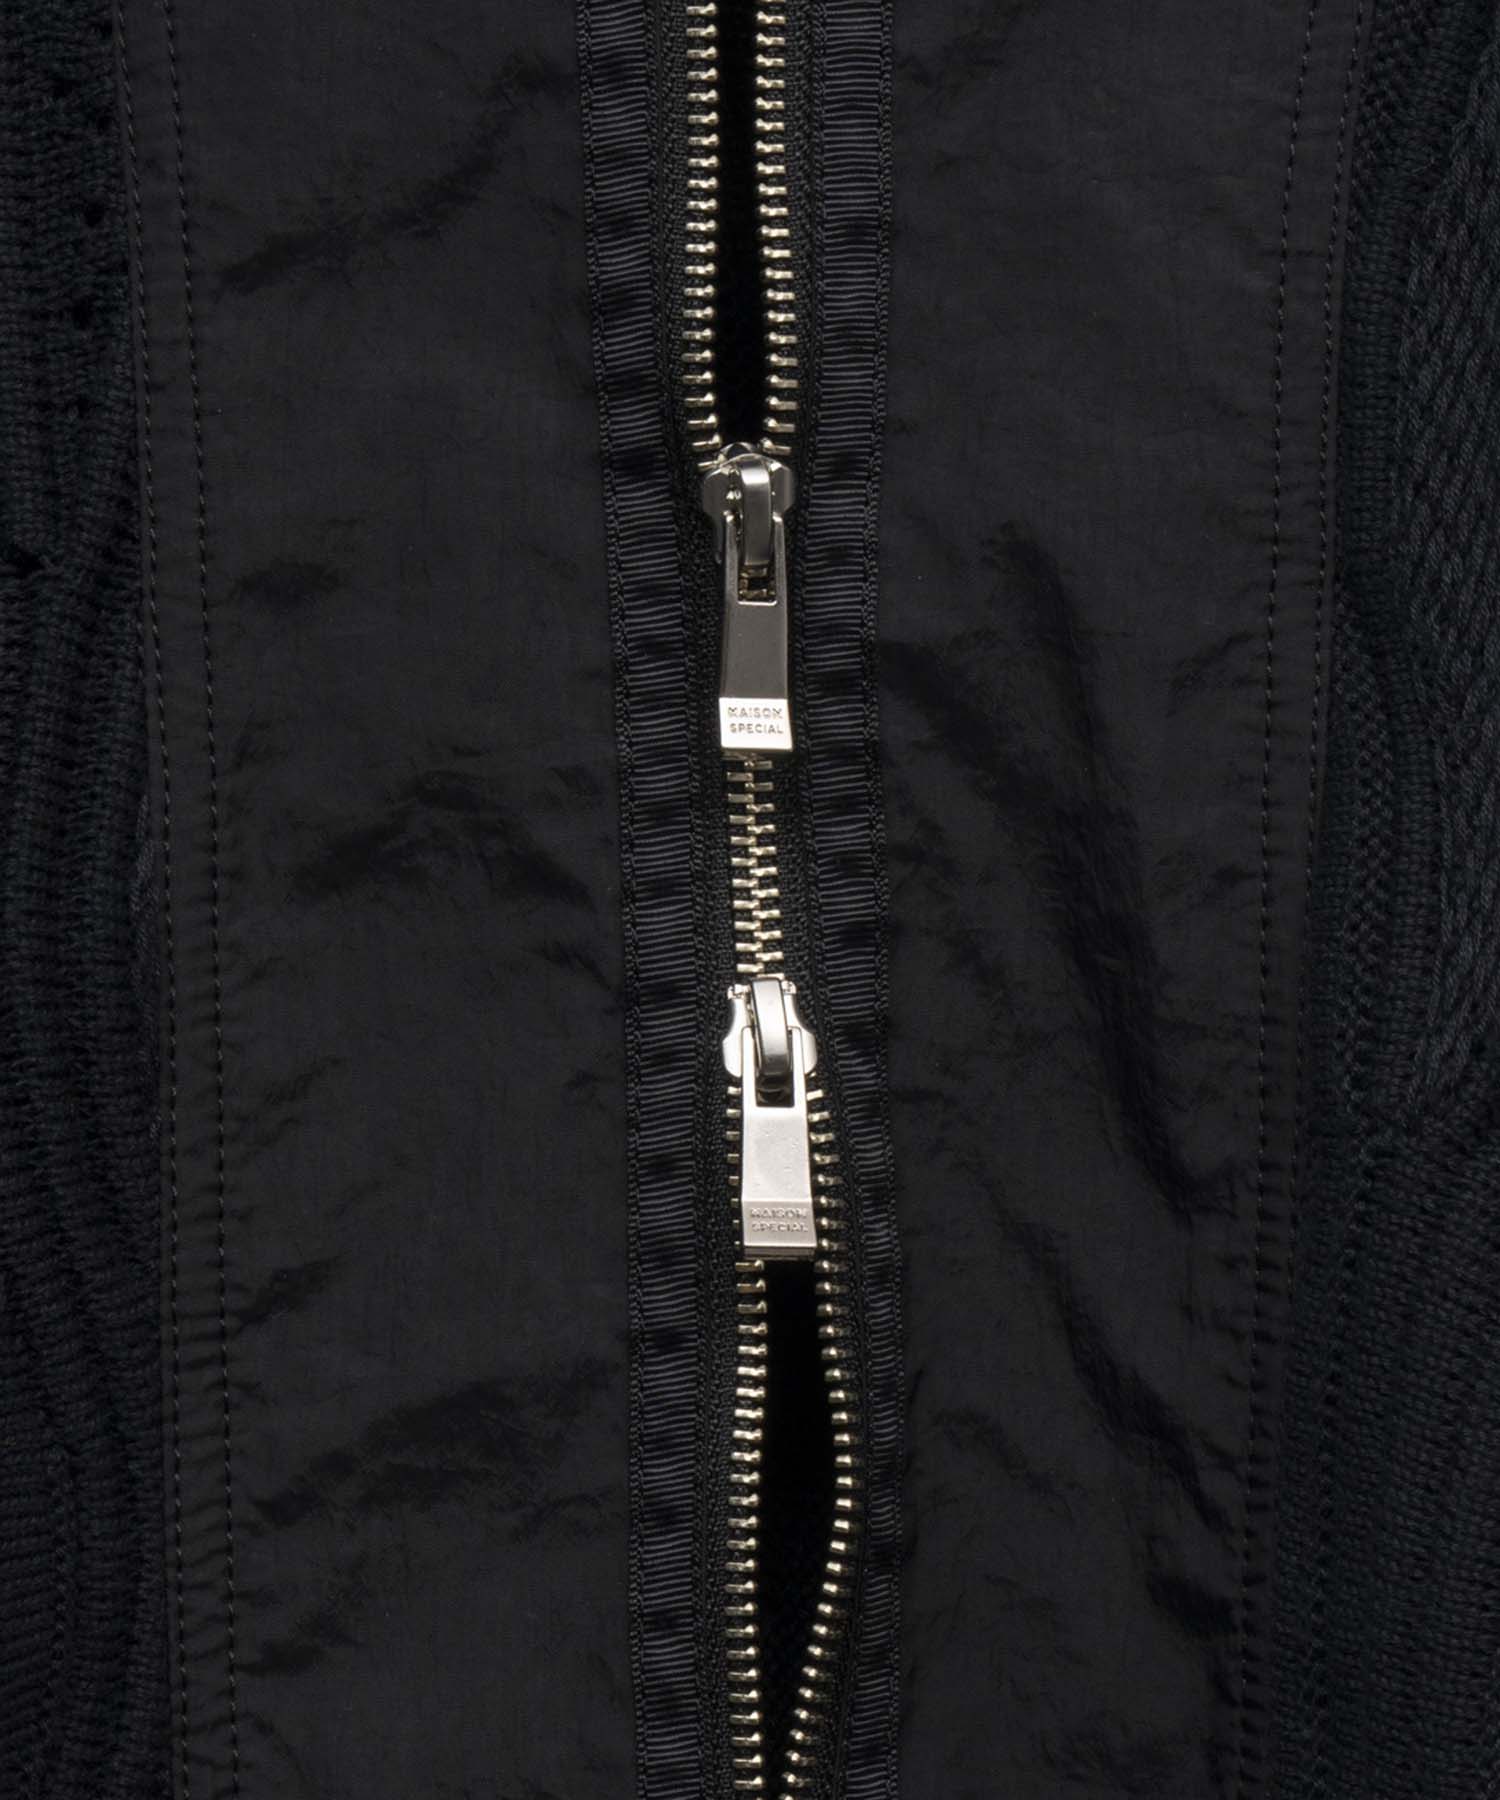 Multi Combination Prime-Over Souvenir Jacket